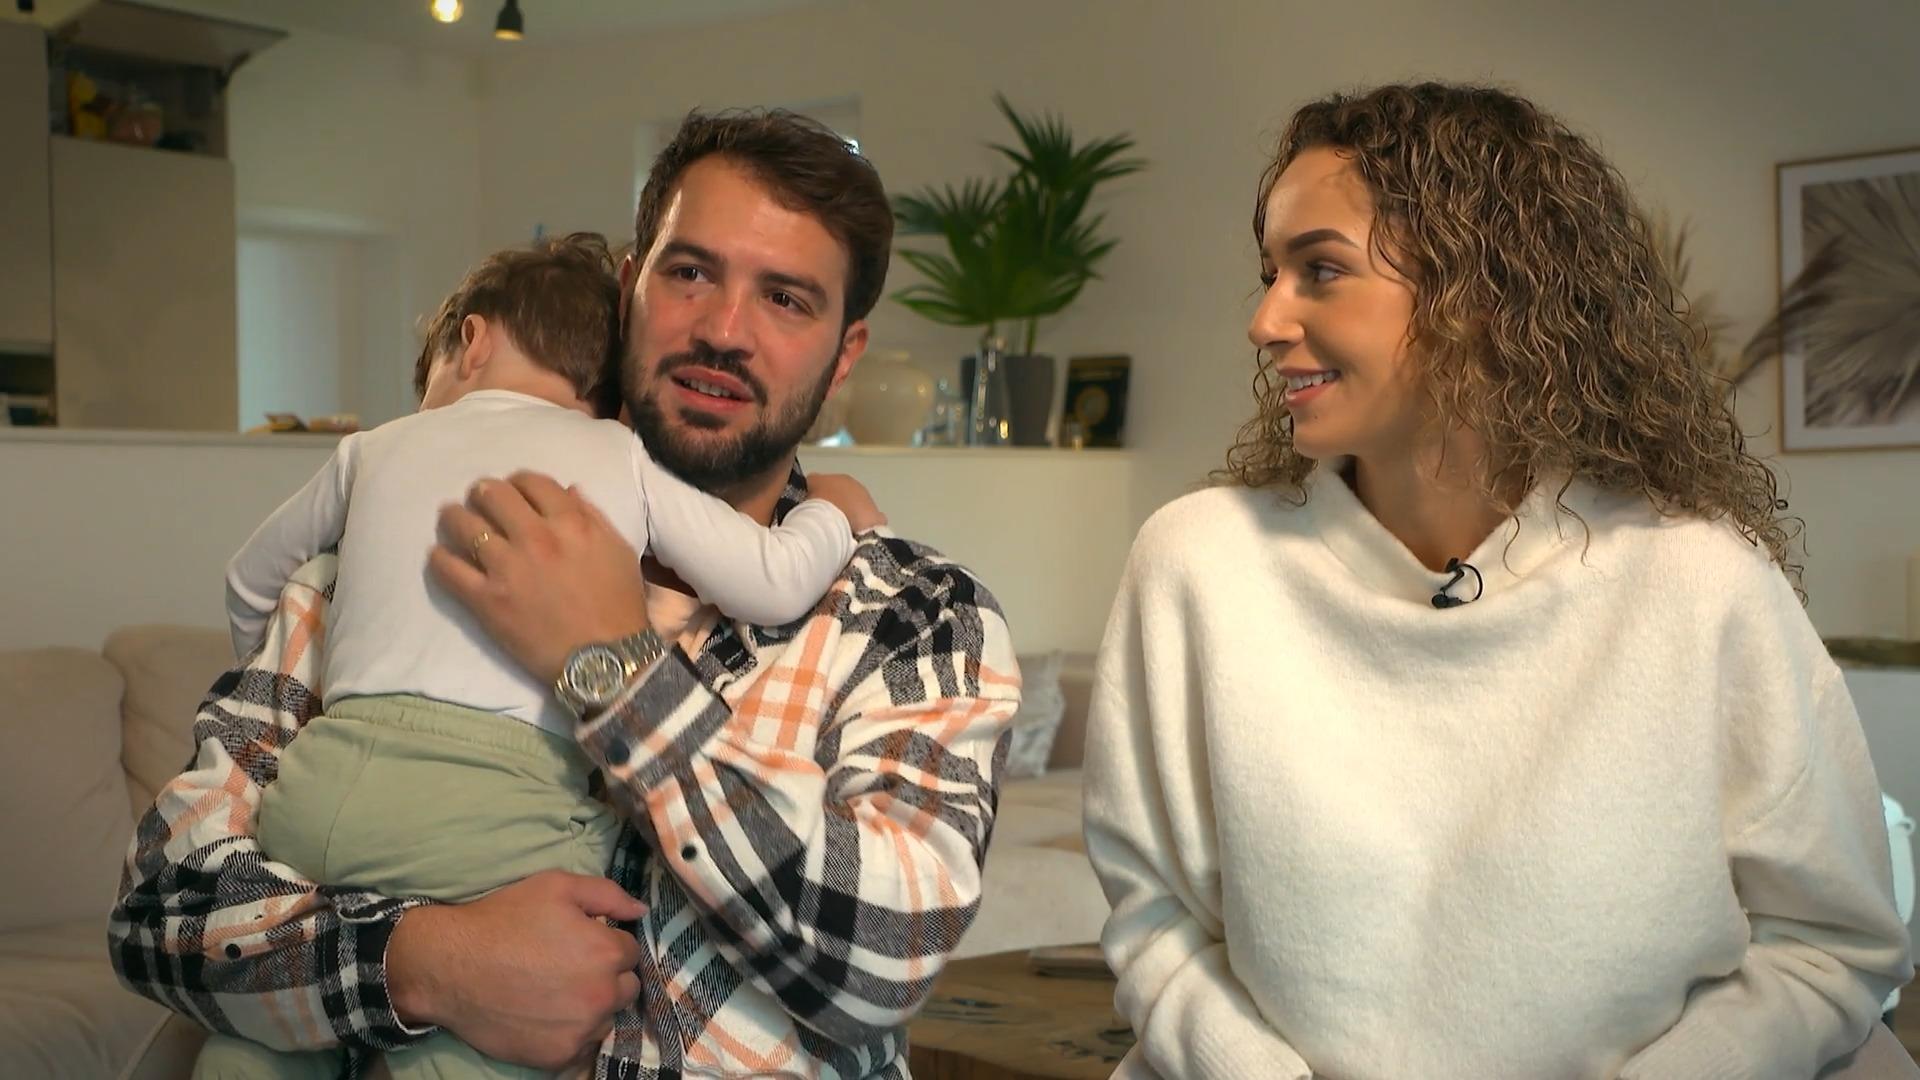 Wieder schwanger: Yasin & Samira überraschen mit Babynews Dabei steckten die beiden mitten in einer Ehekrise